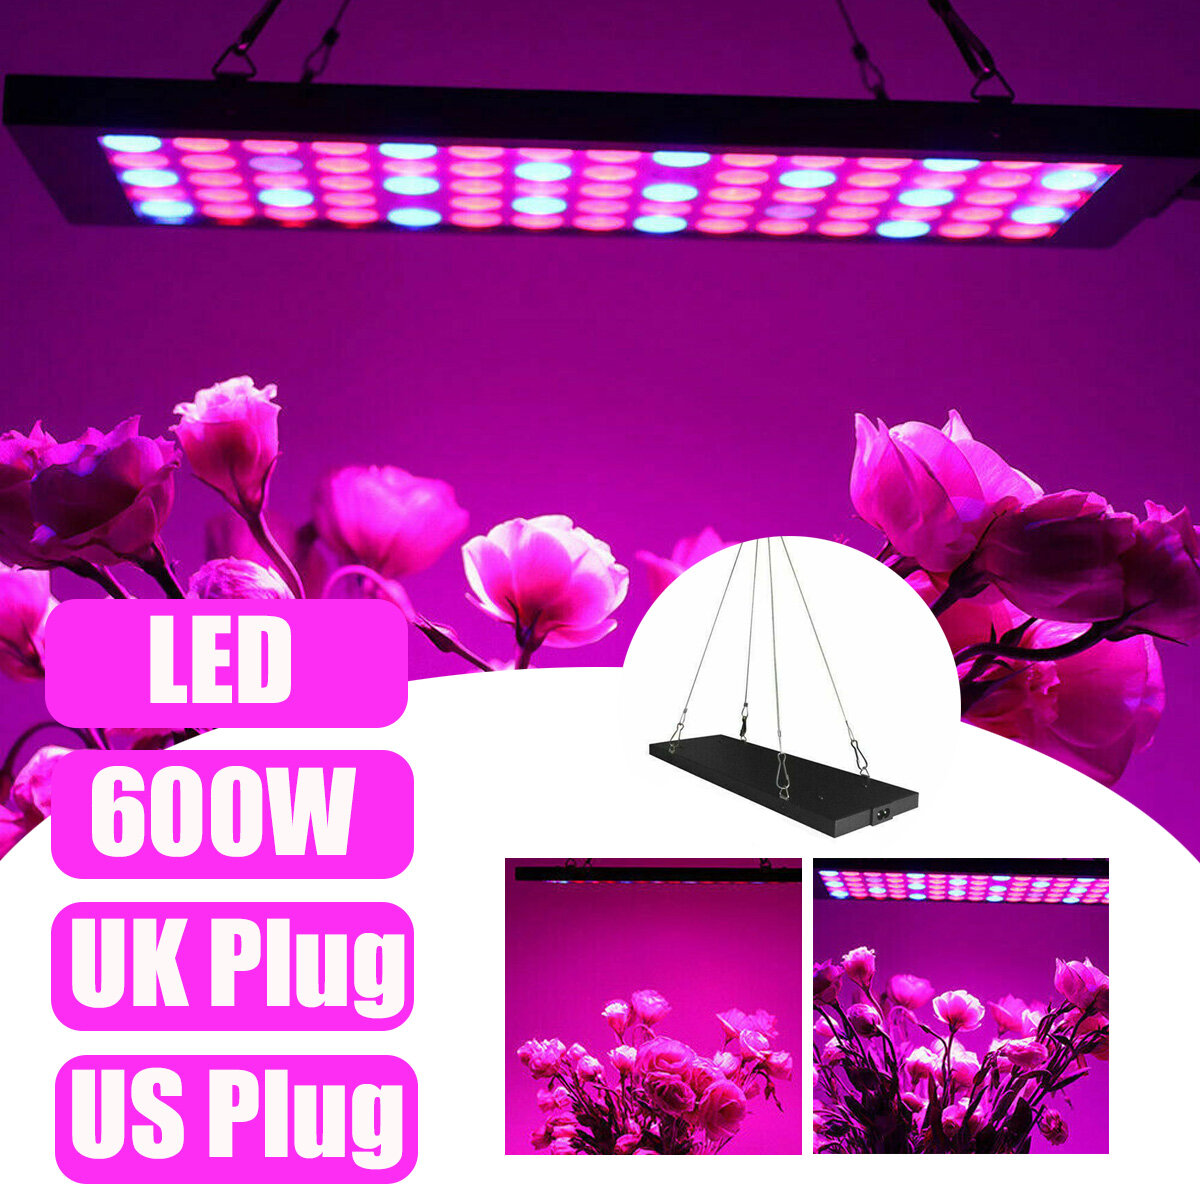 

600W LED Grow Light Hydroponic Full Spectrum Indoor Plant Veg Flower Panel Lamp AC85-265V